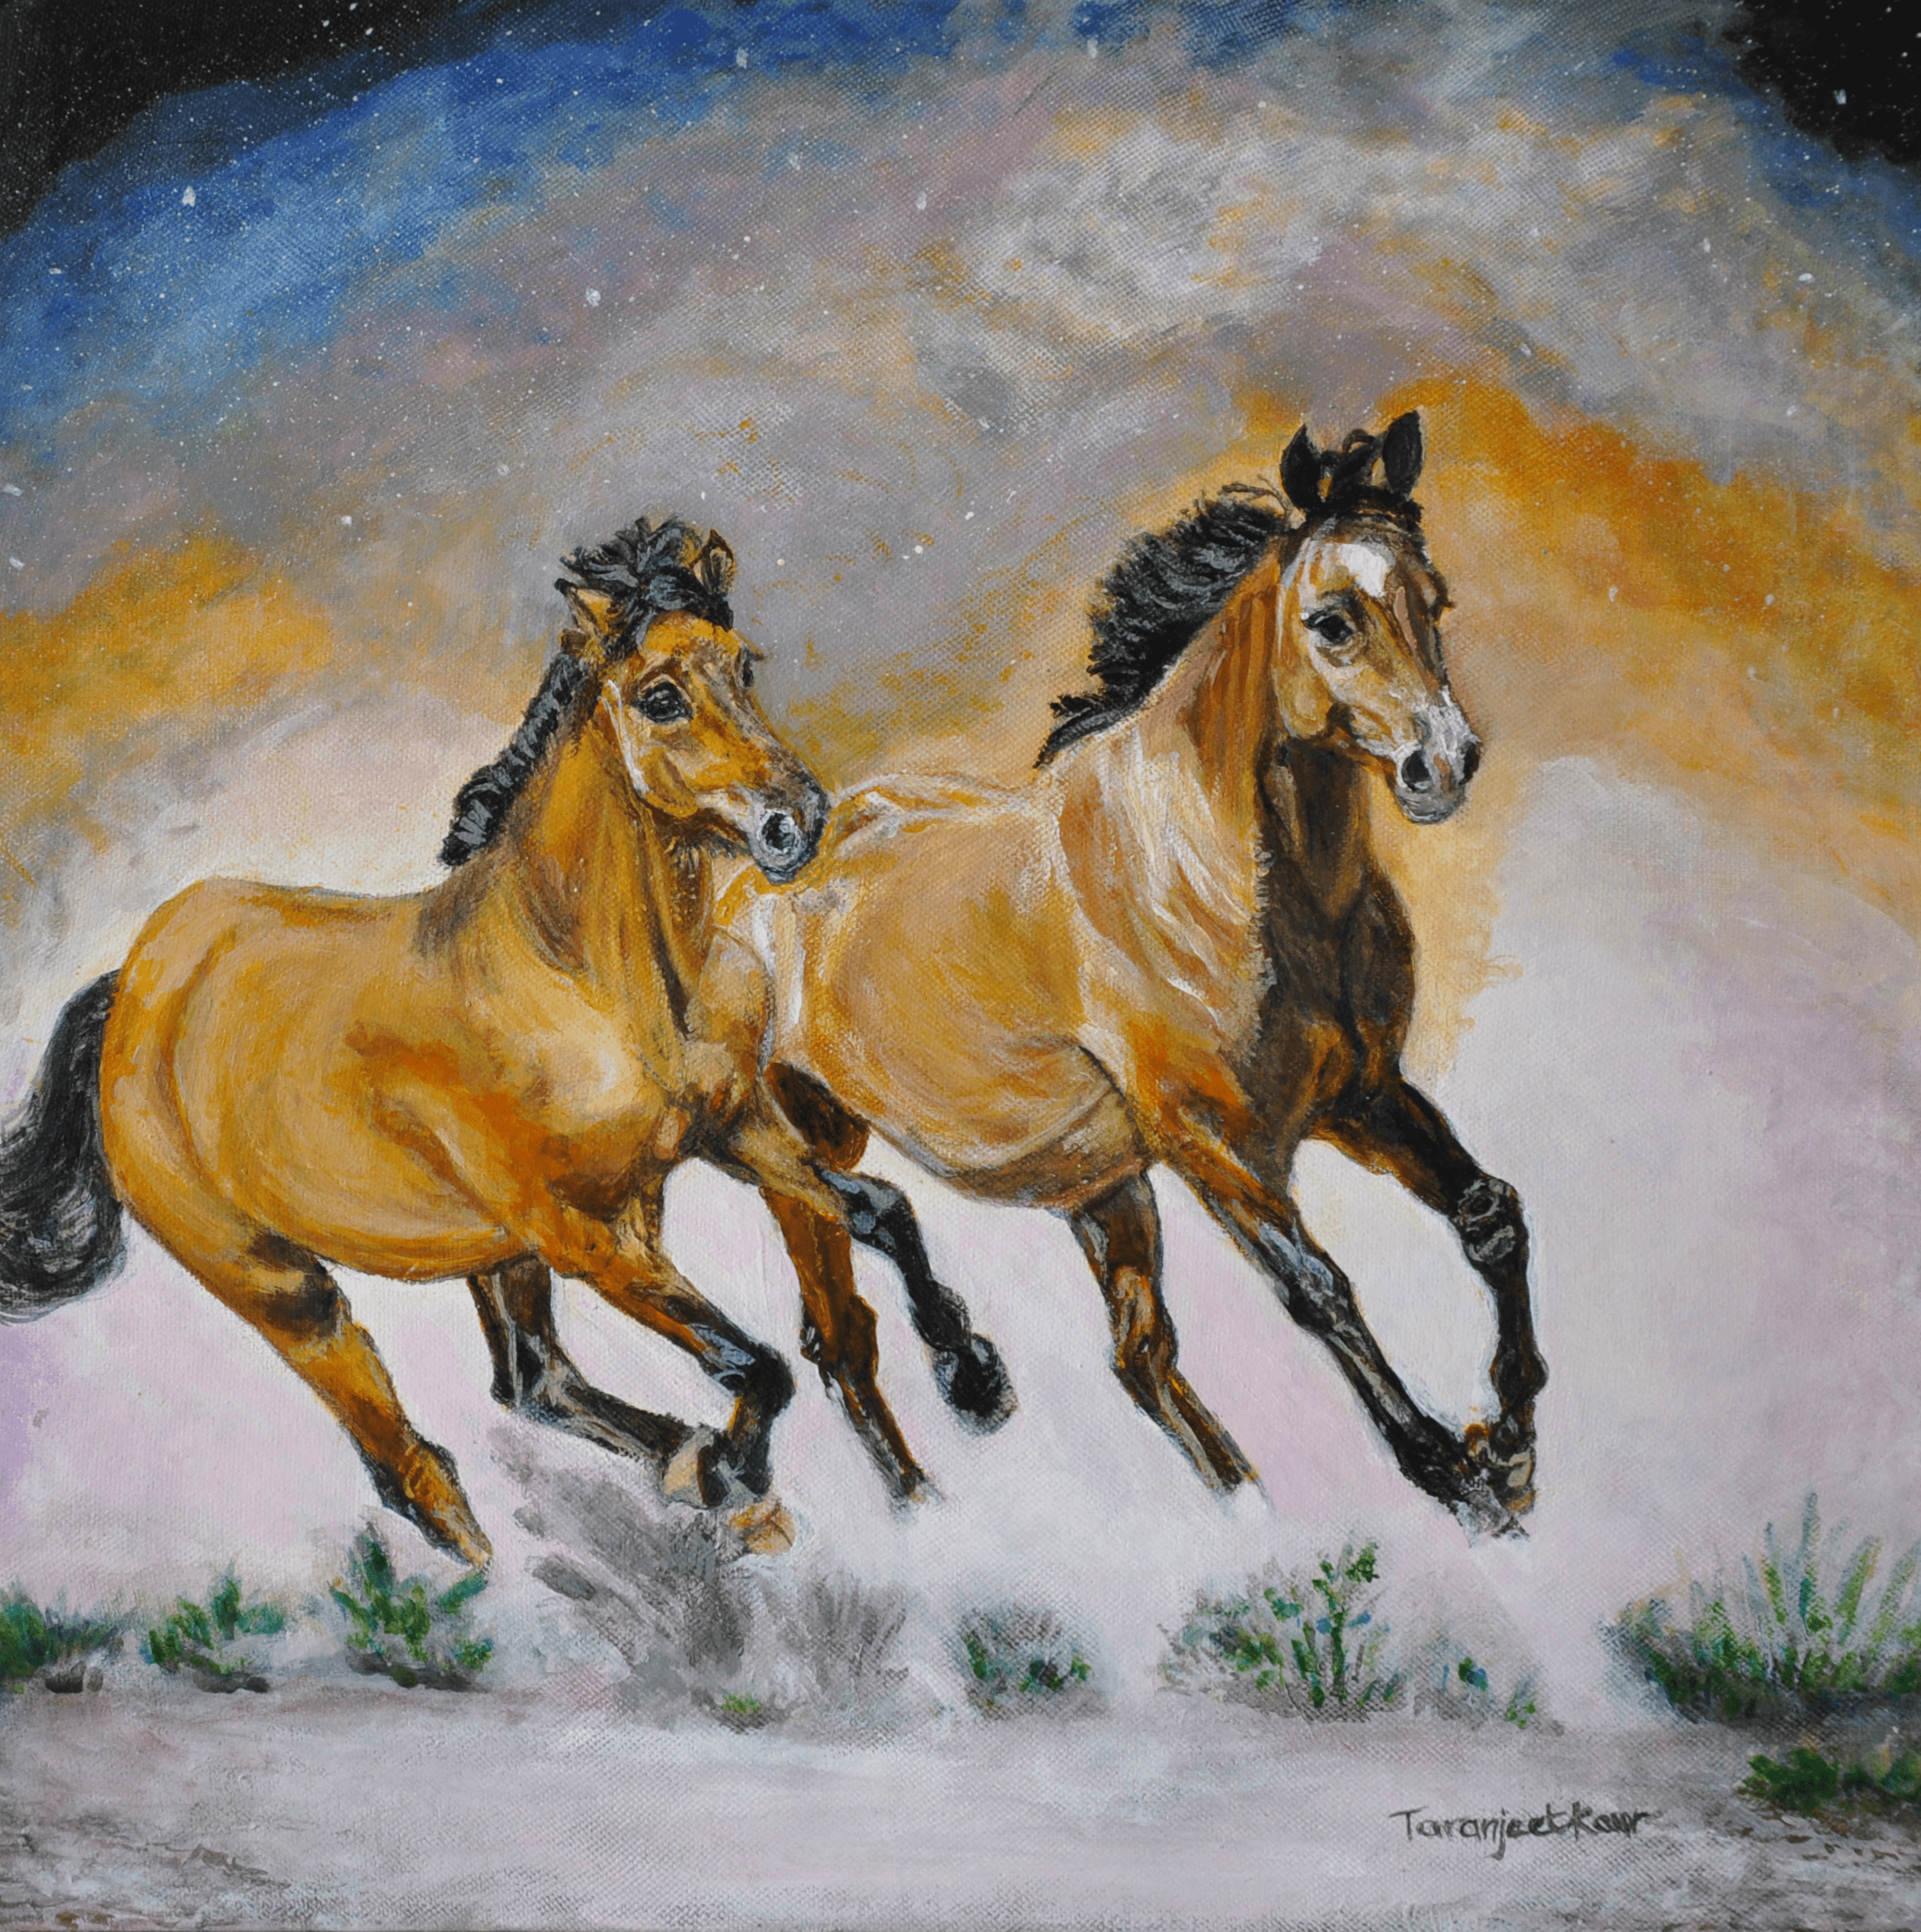 running horses